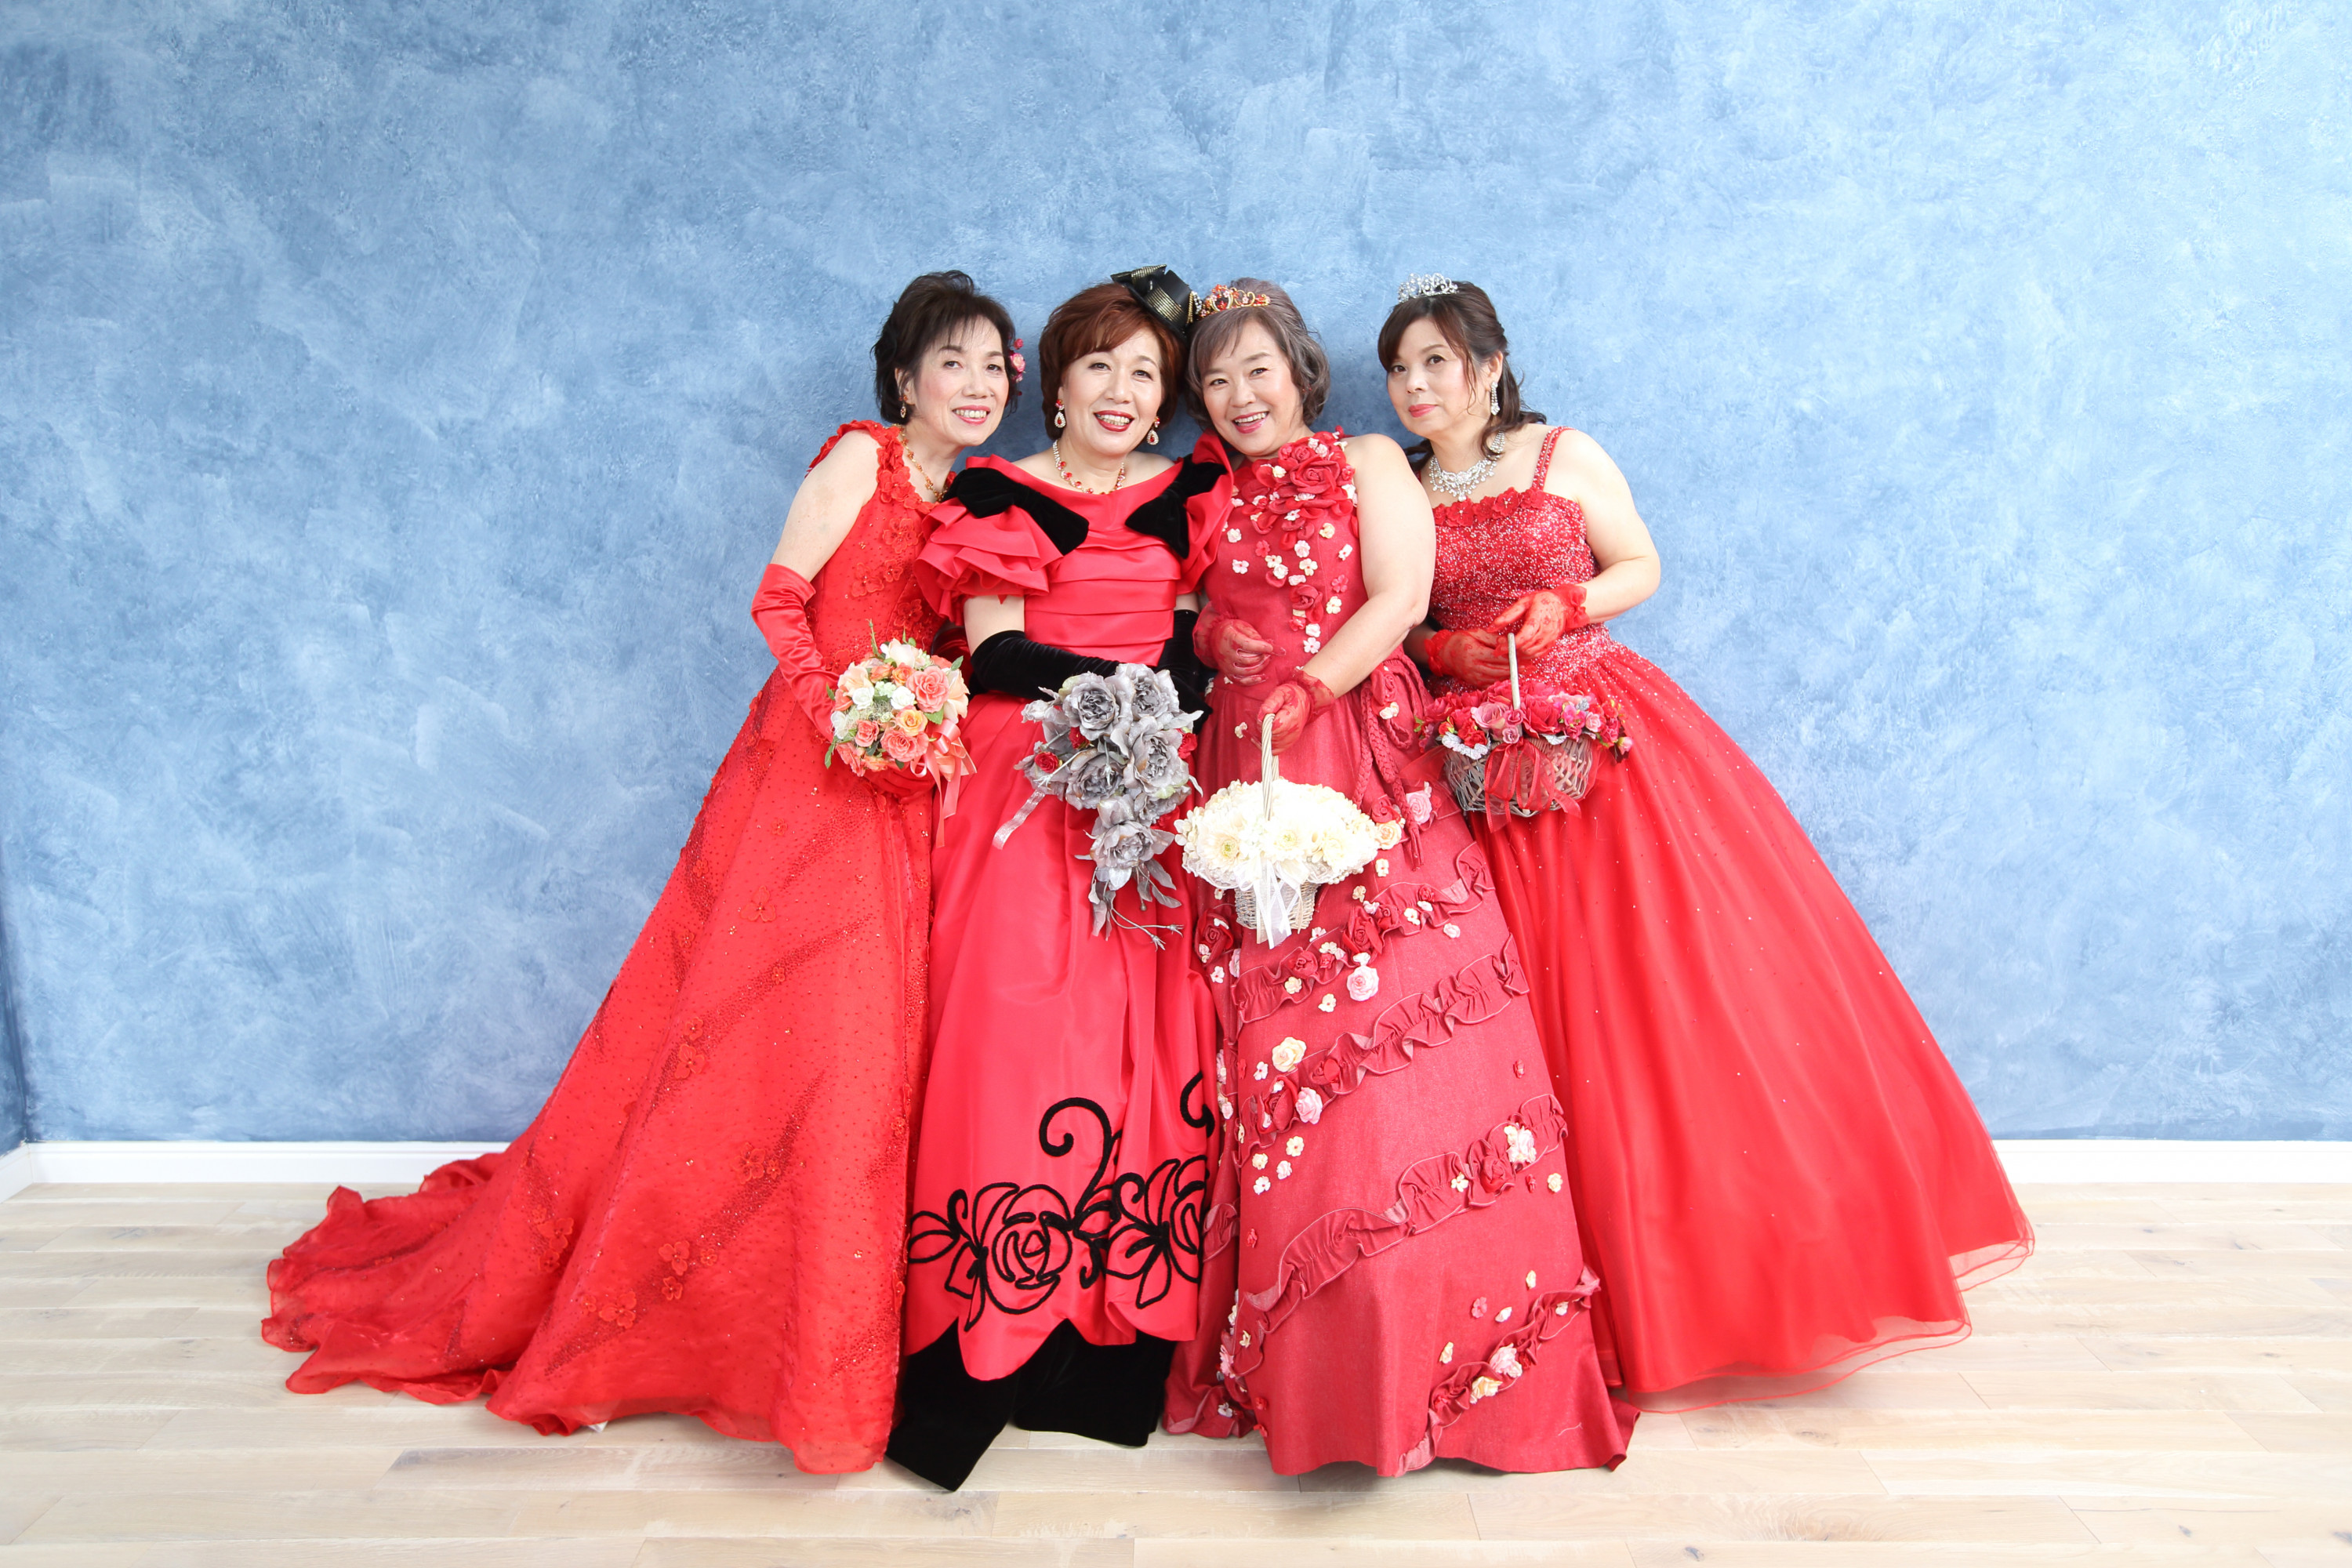 ドレスを着た還暦女性4人の写真